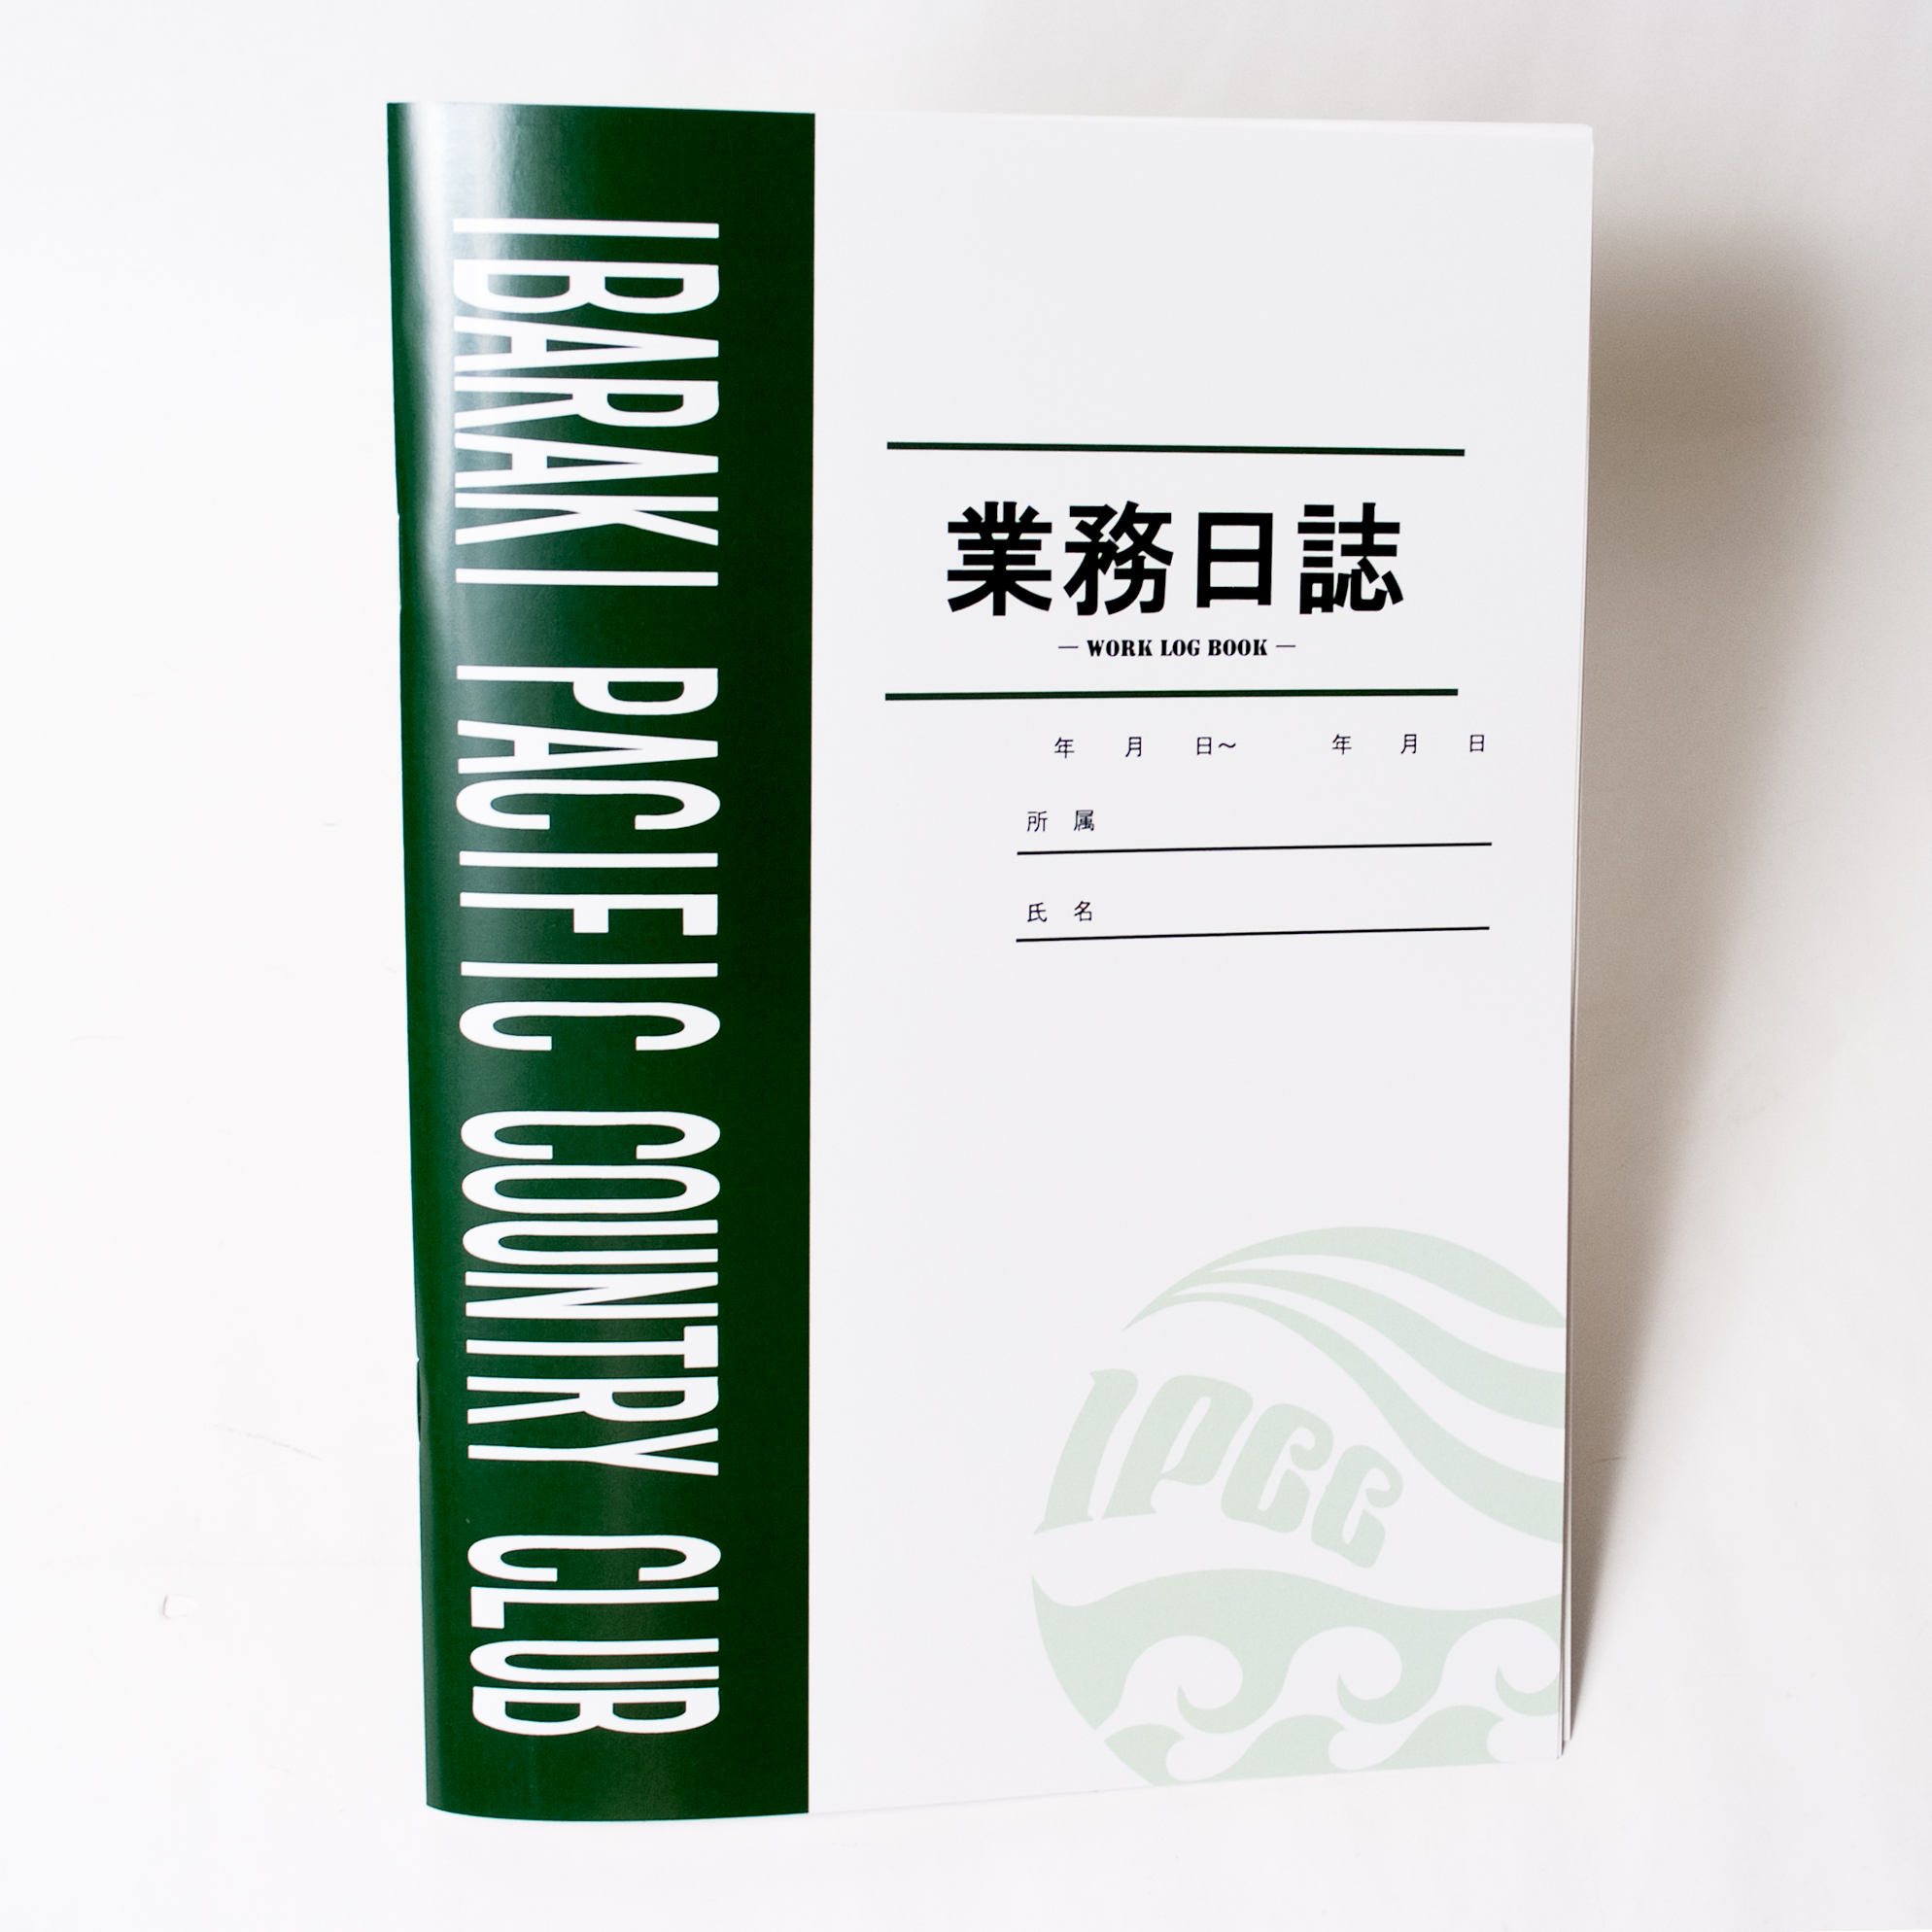 「IPCC 様」製作のオリジナルノート